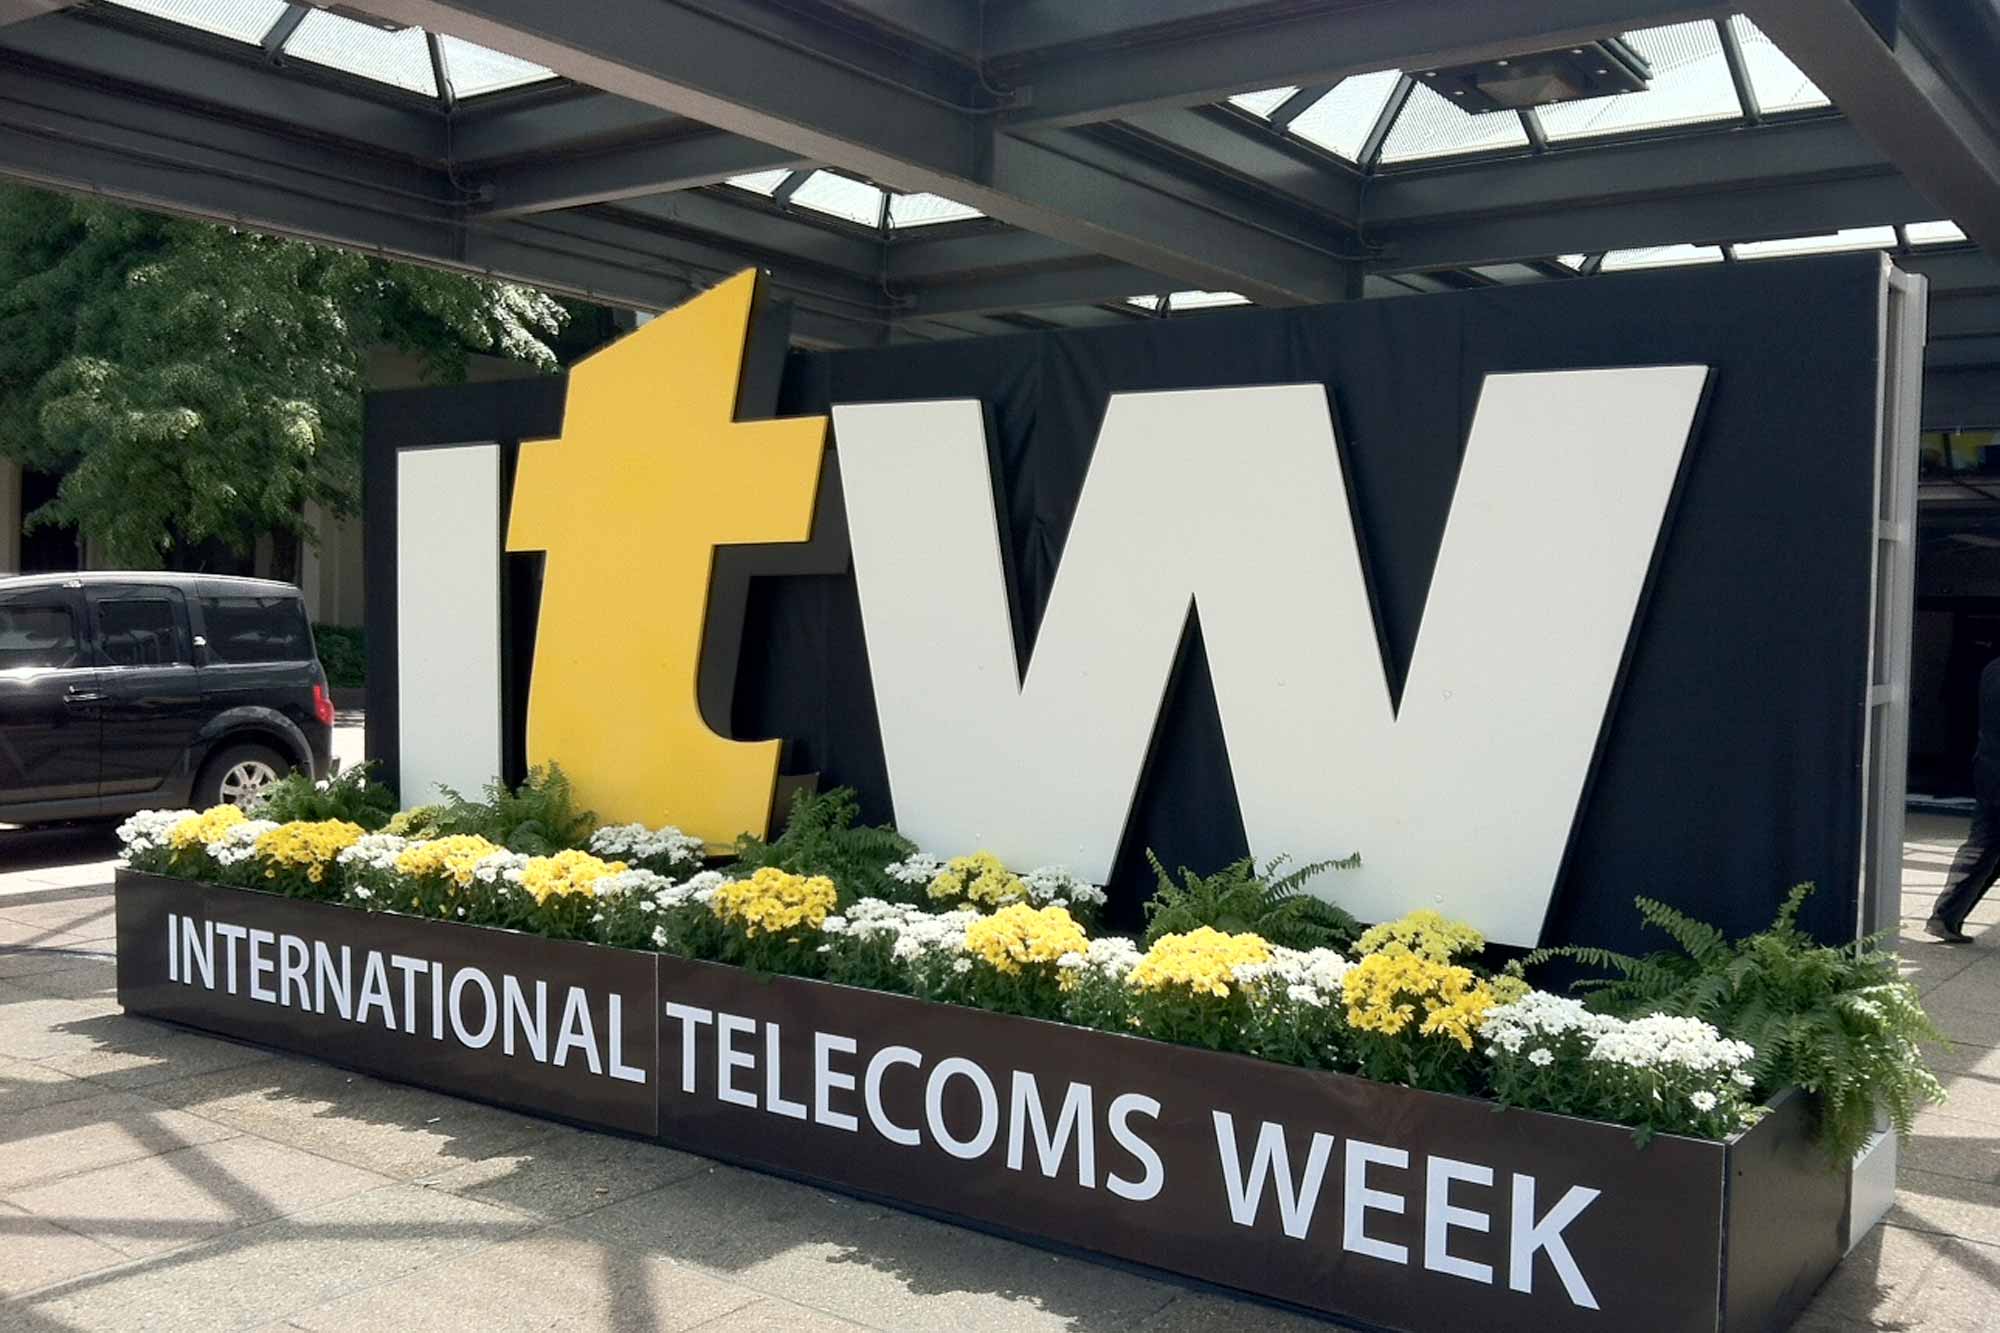 International Telecoms Week 2014